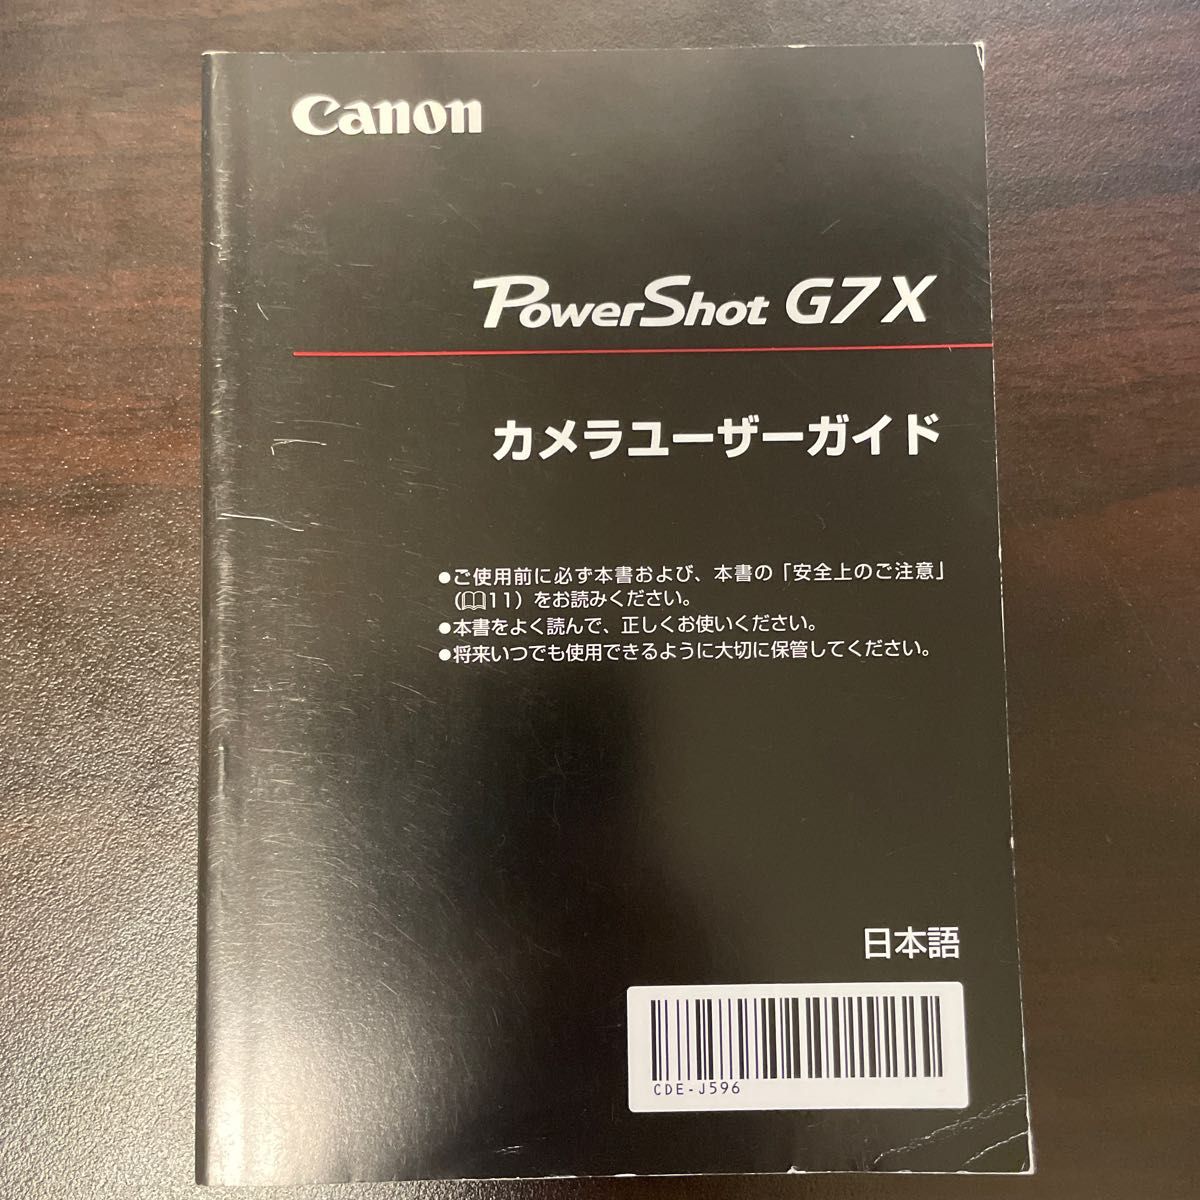 Canon PowerShot G7 X カメラユーザーガイド